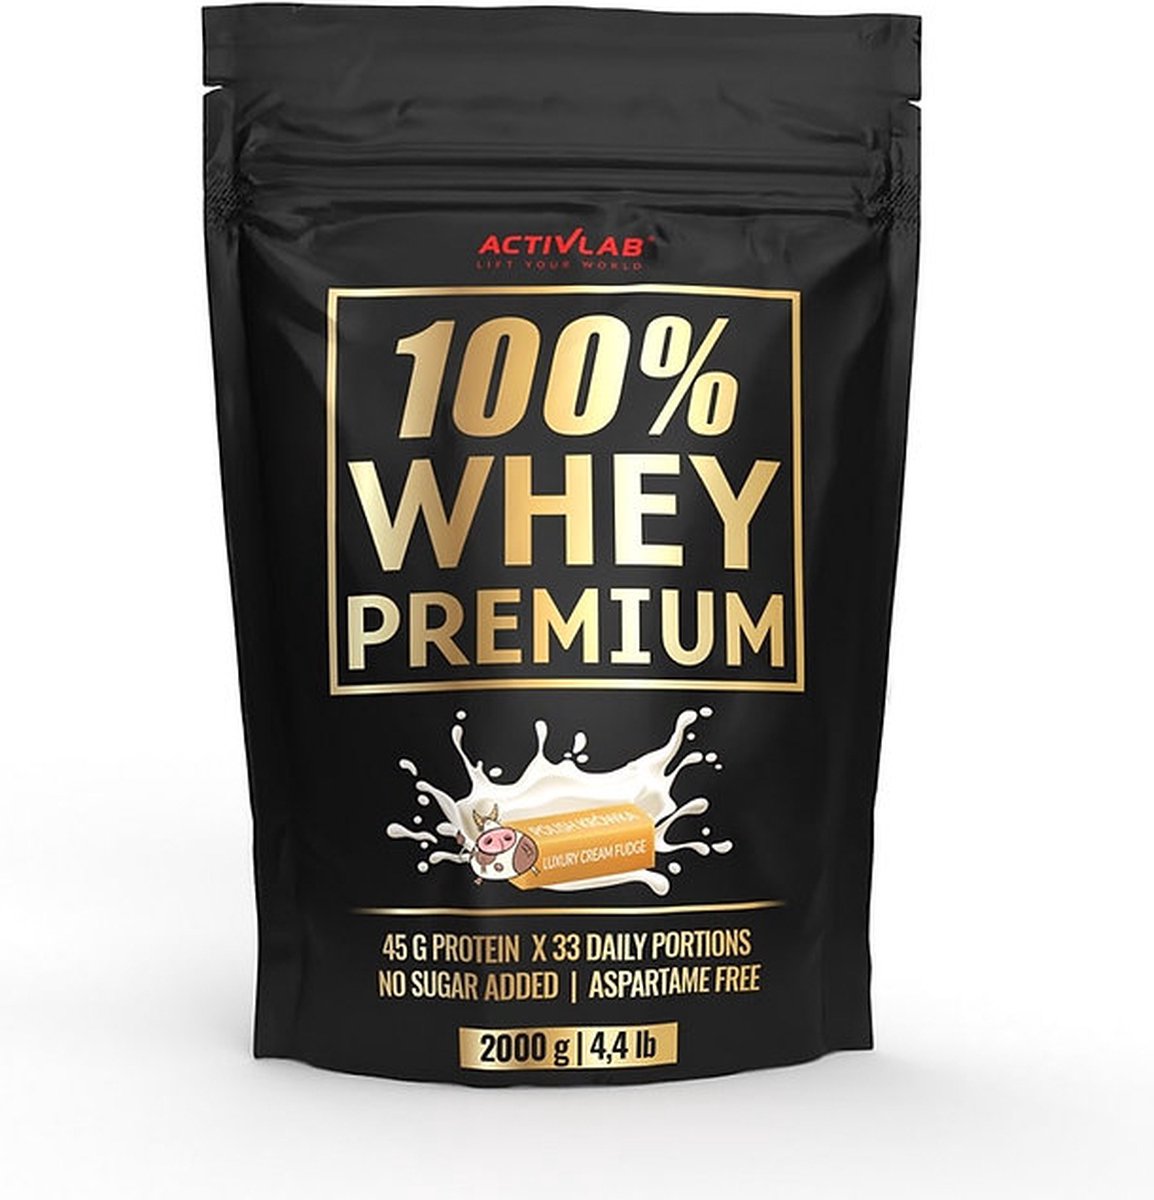 Activlab 100% Whey Premium Protein - Whey protein - Proteine poeder - Eiwitshake - 2000g - 66 servings - Milk fudge - Toffee